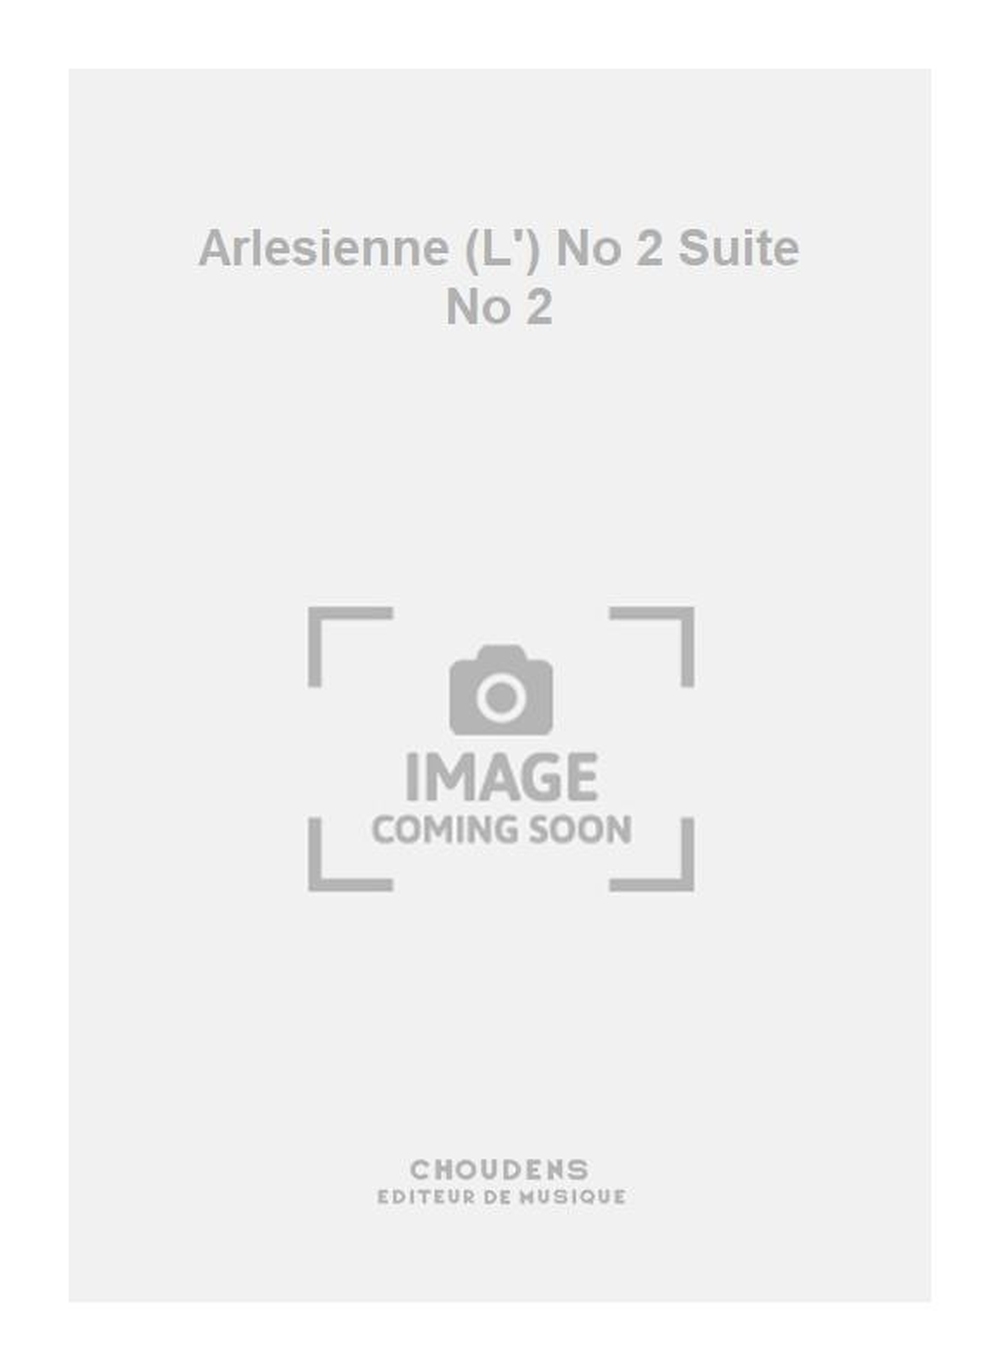 Georges Bizet: Arlesienne (L') No 2 Suite No 2